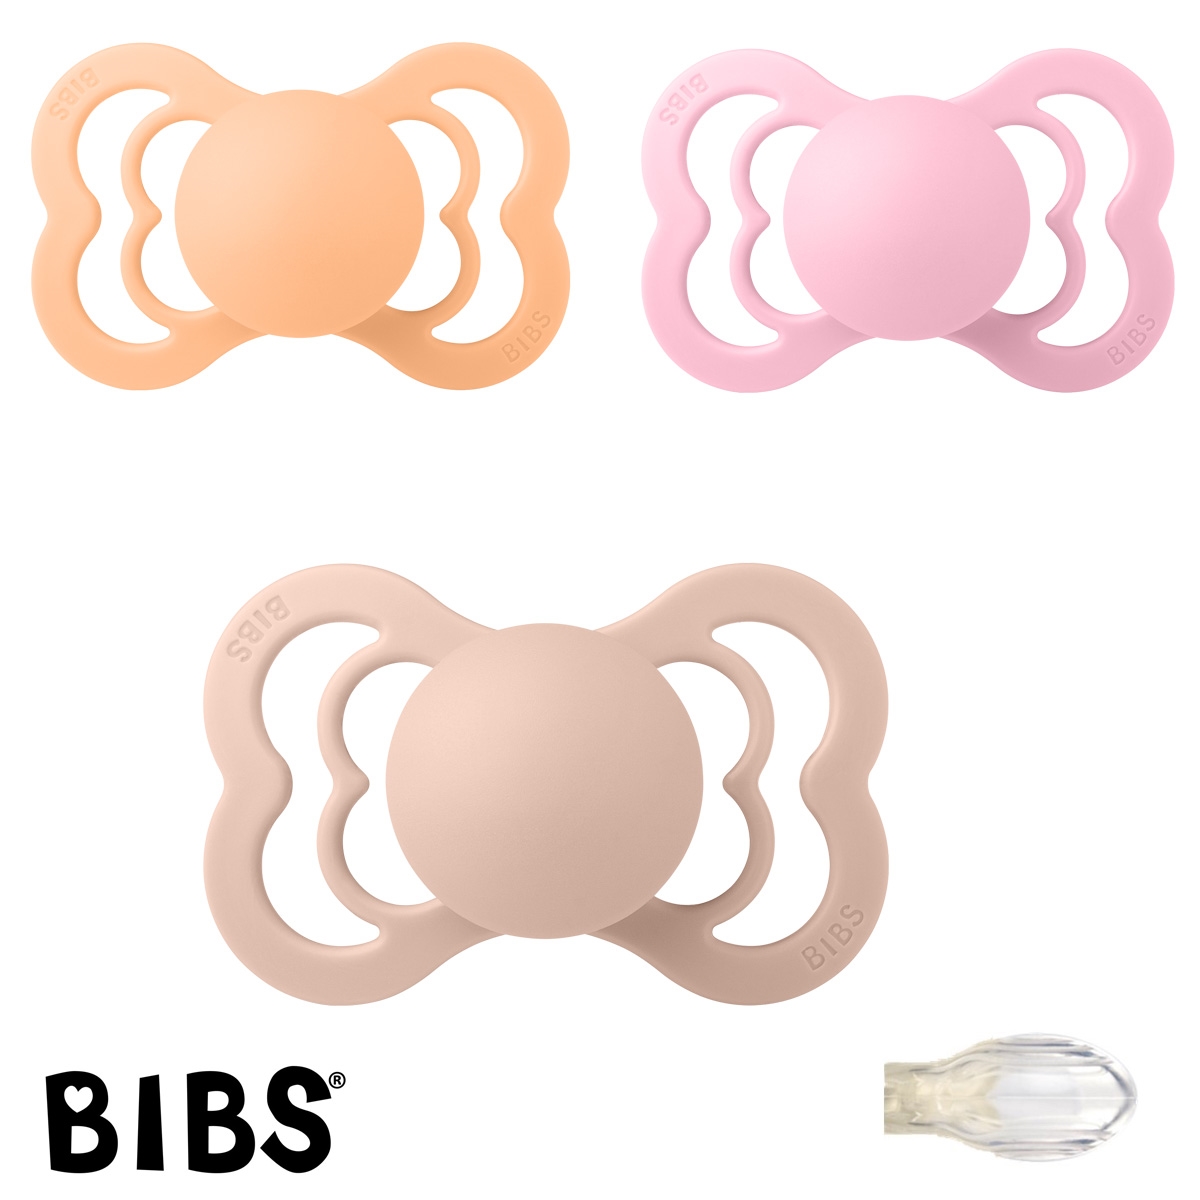 BIBS Supreme Sutter med navn, 1 Peach Sunset, 1 Baby Pink, 1 Blush, Symmetrisk Silikone str.2 Pakke med 3 sutter